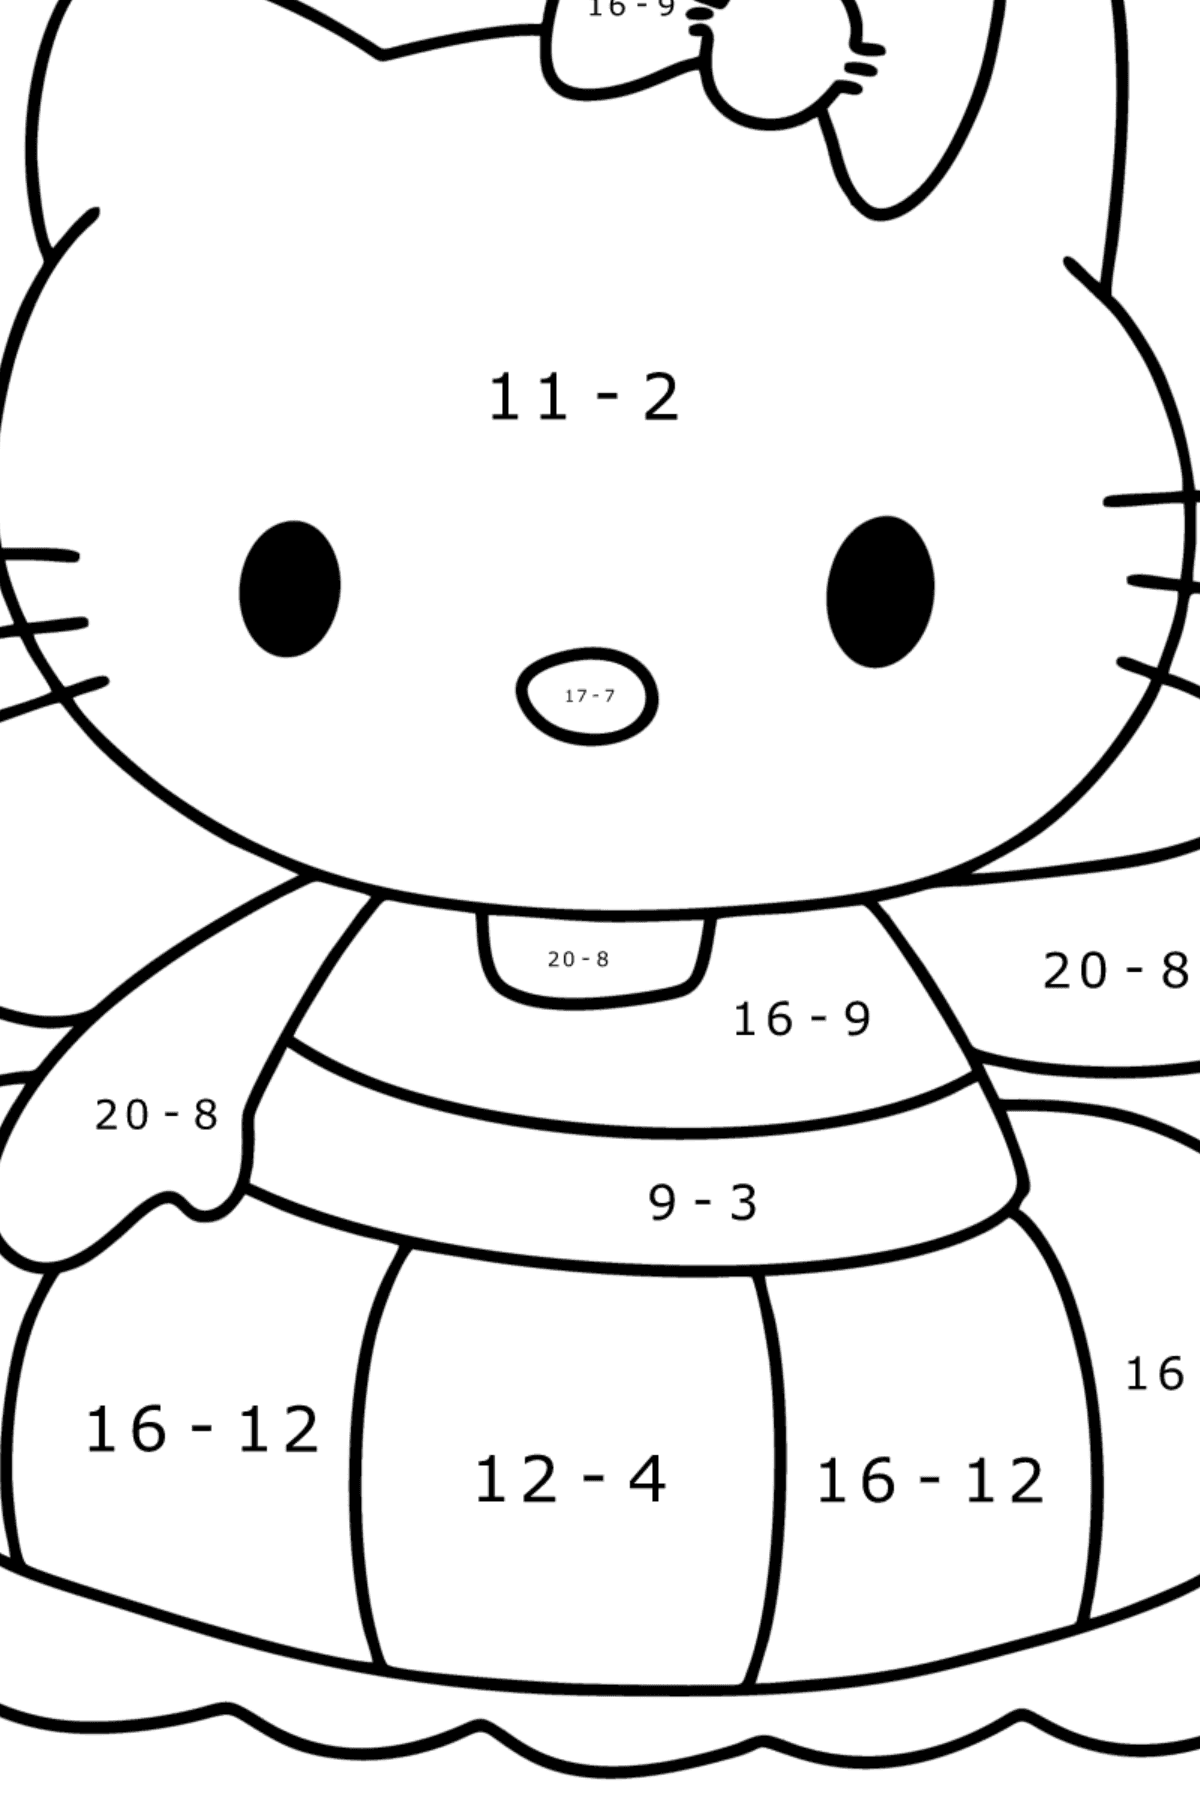 Boyama sayfası Hello Kitty yüzer - Matematik Boyama - Çıkarma çocuklar için